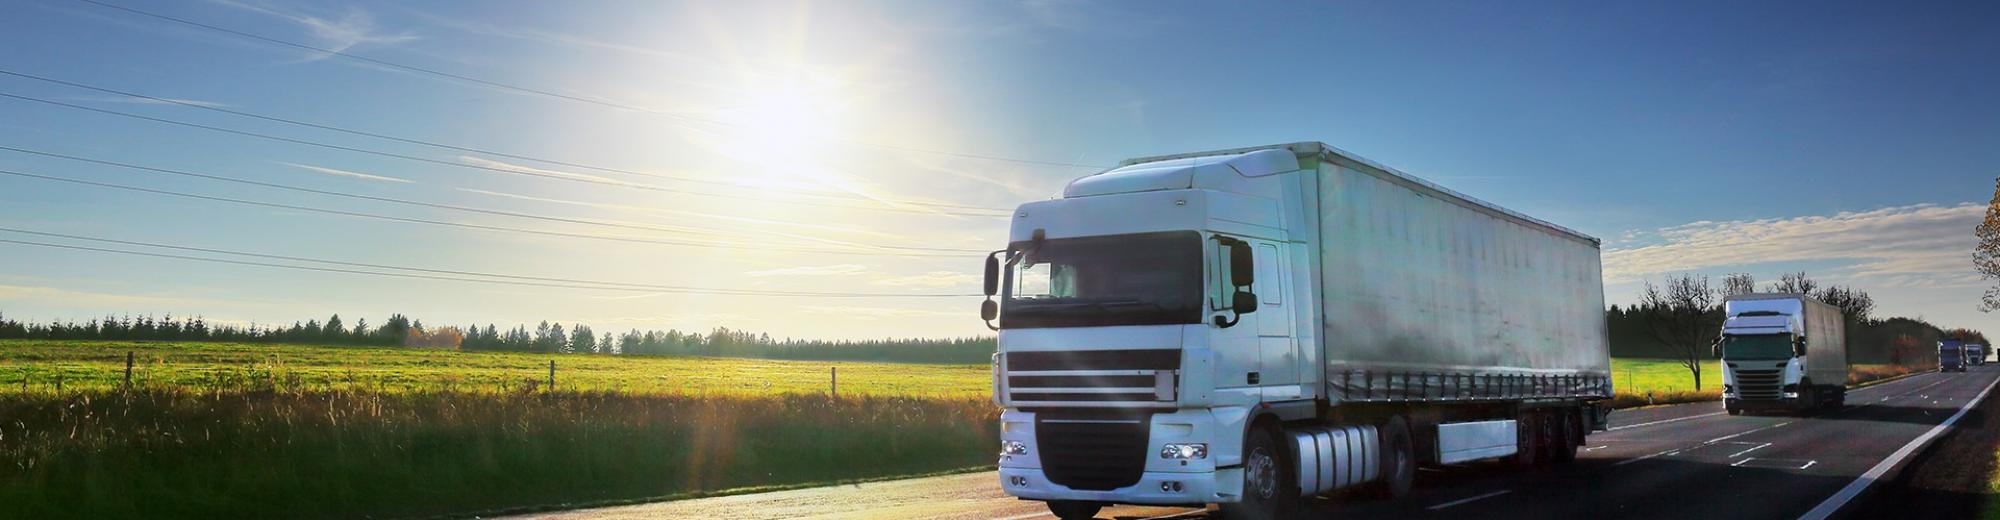 Rijdende vrachtwagen op de weg met blauwe lucht en zon op de achtergrond | Seacon Logistics 